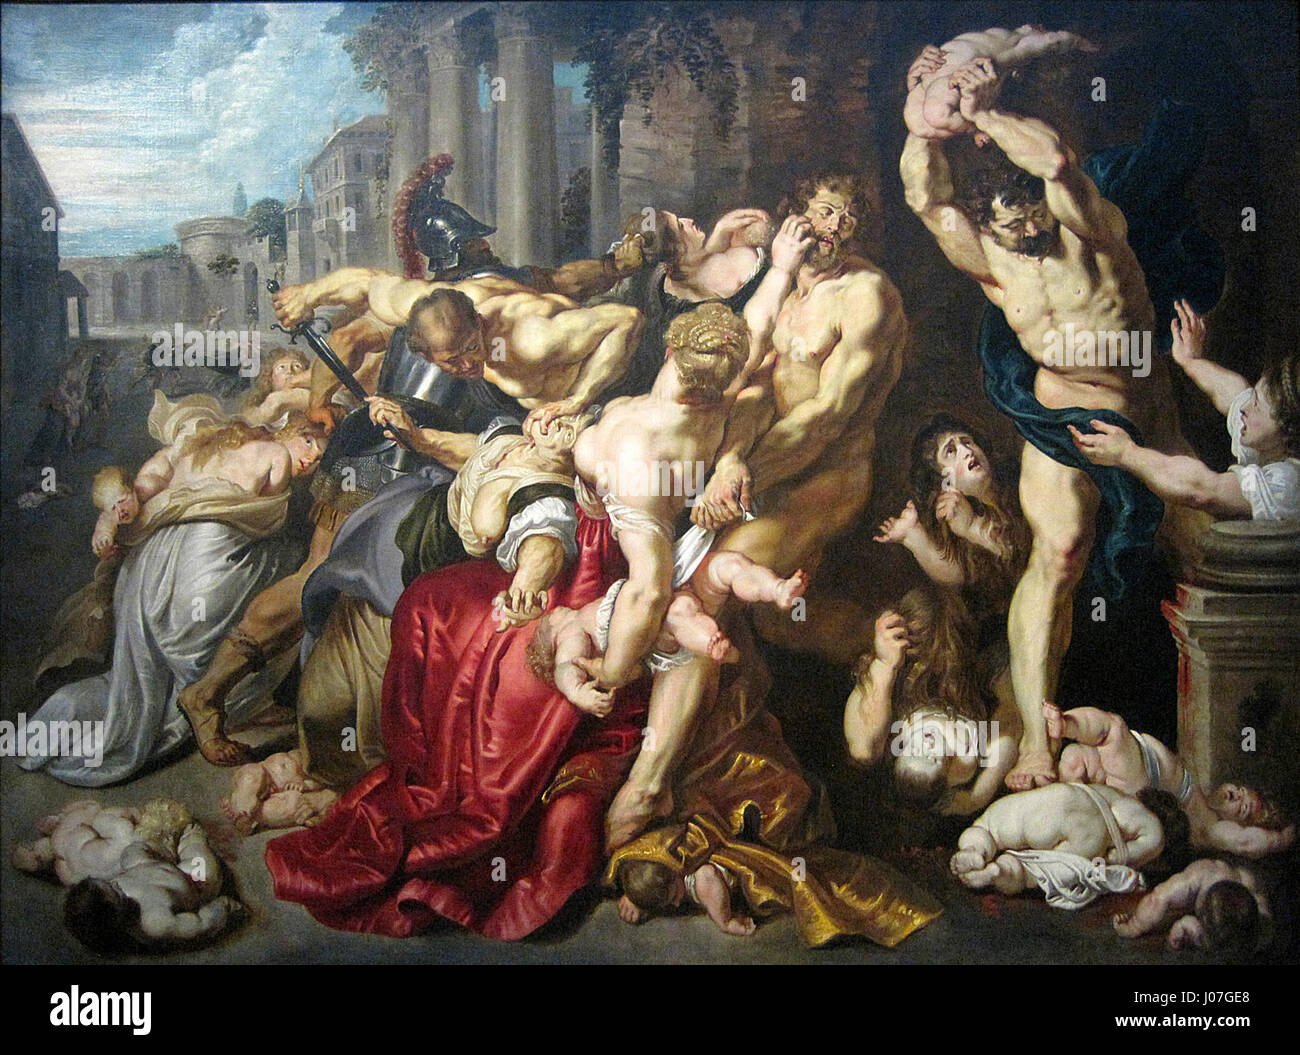 0 Le Massacre des Innocents d'après P.P. Rubens - Musées royaux des beaux-arts de Belgique (2) Stock Photo